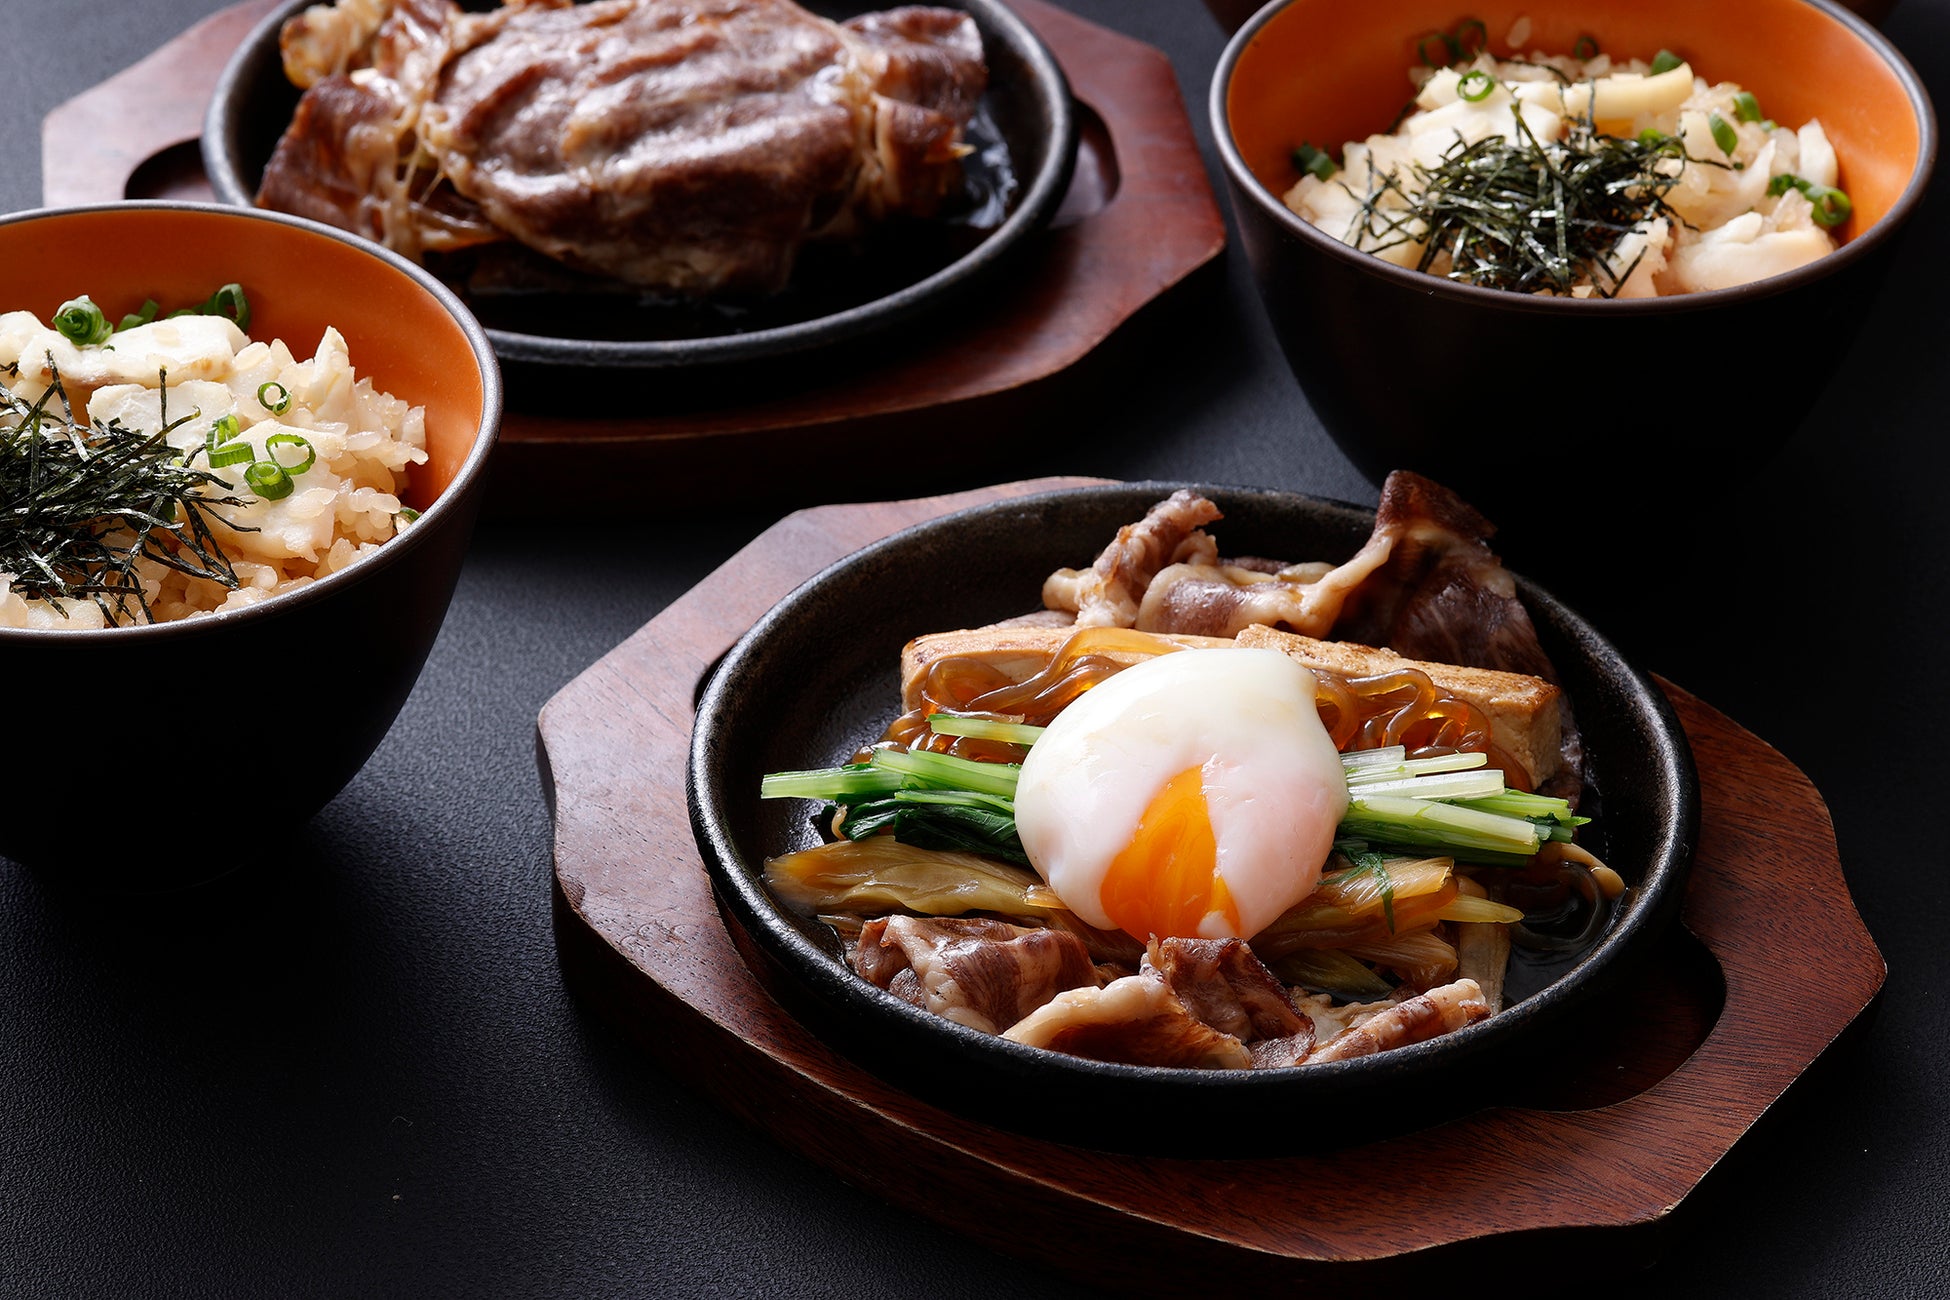 鉄板コーナーの日本の定番メニュー「すき焼き」と「真鯛の炊き込みご飯」